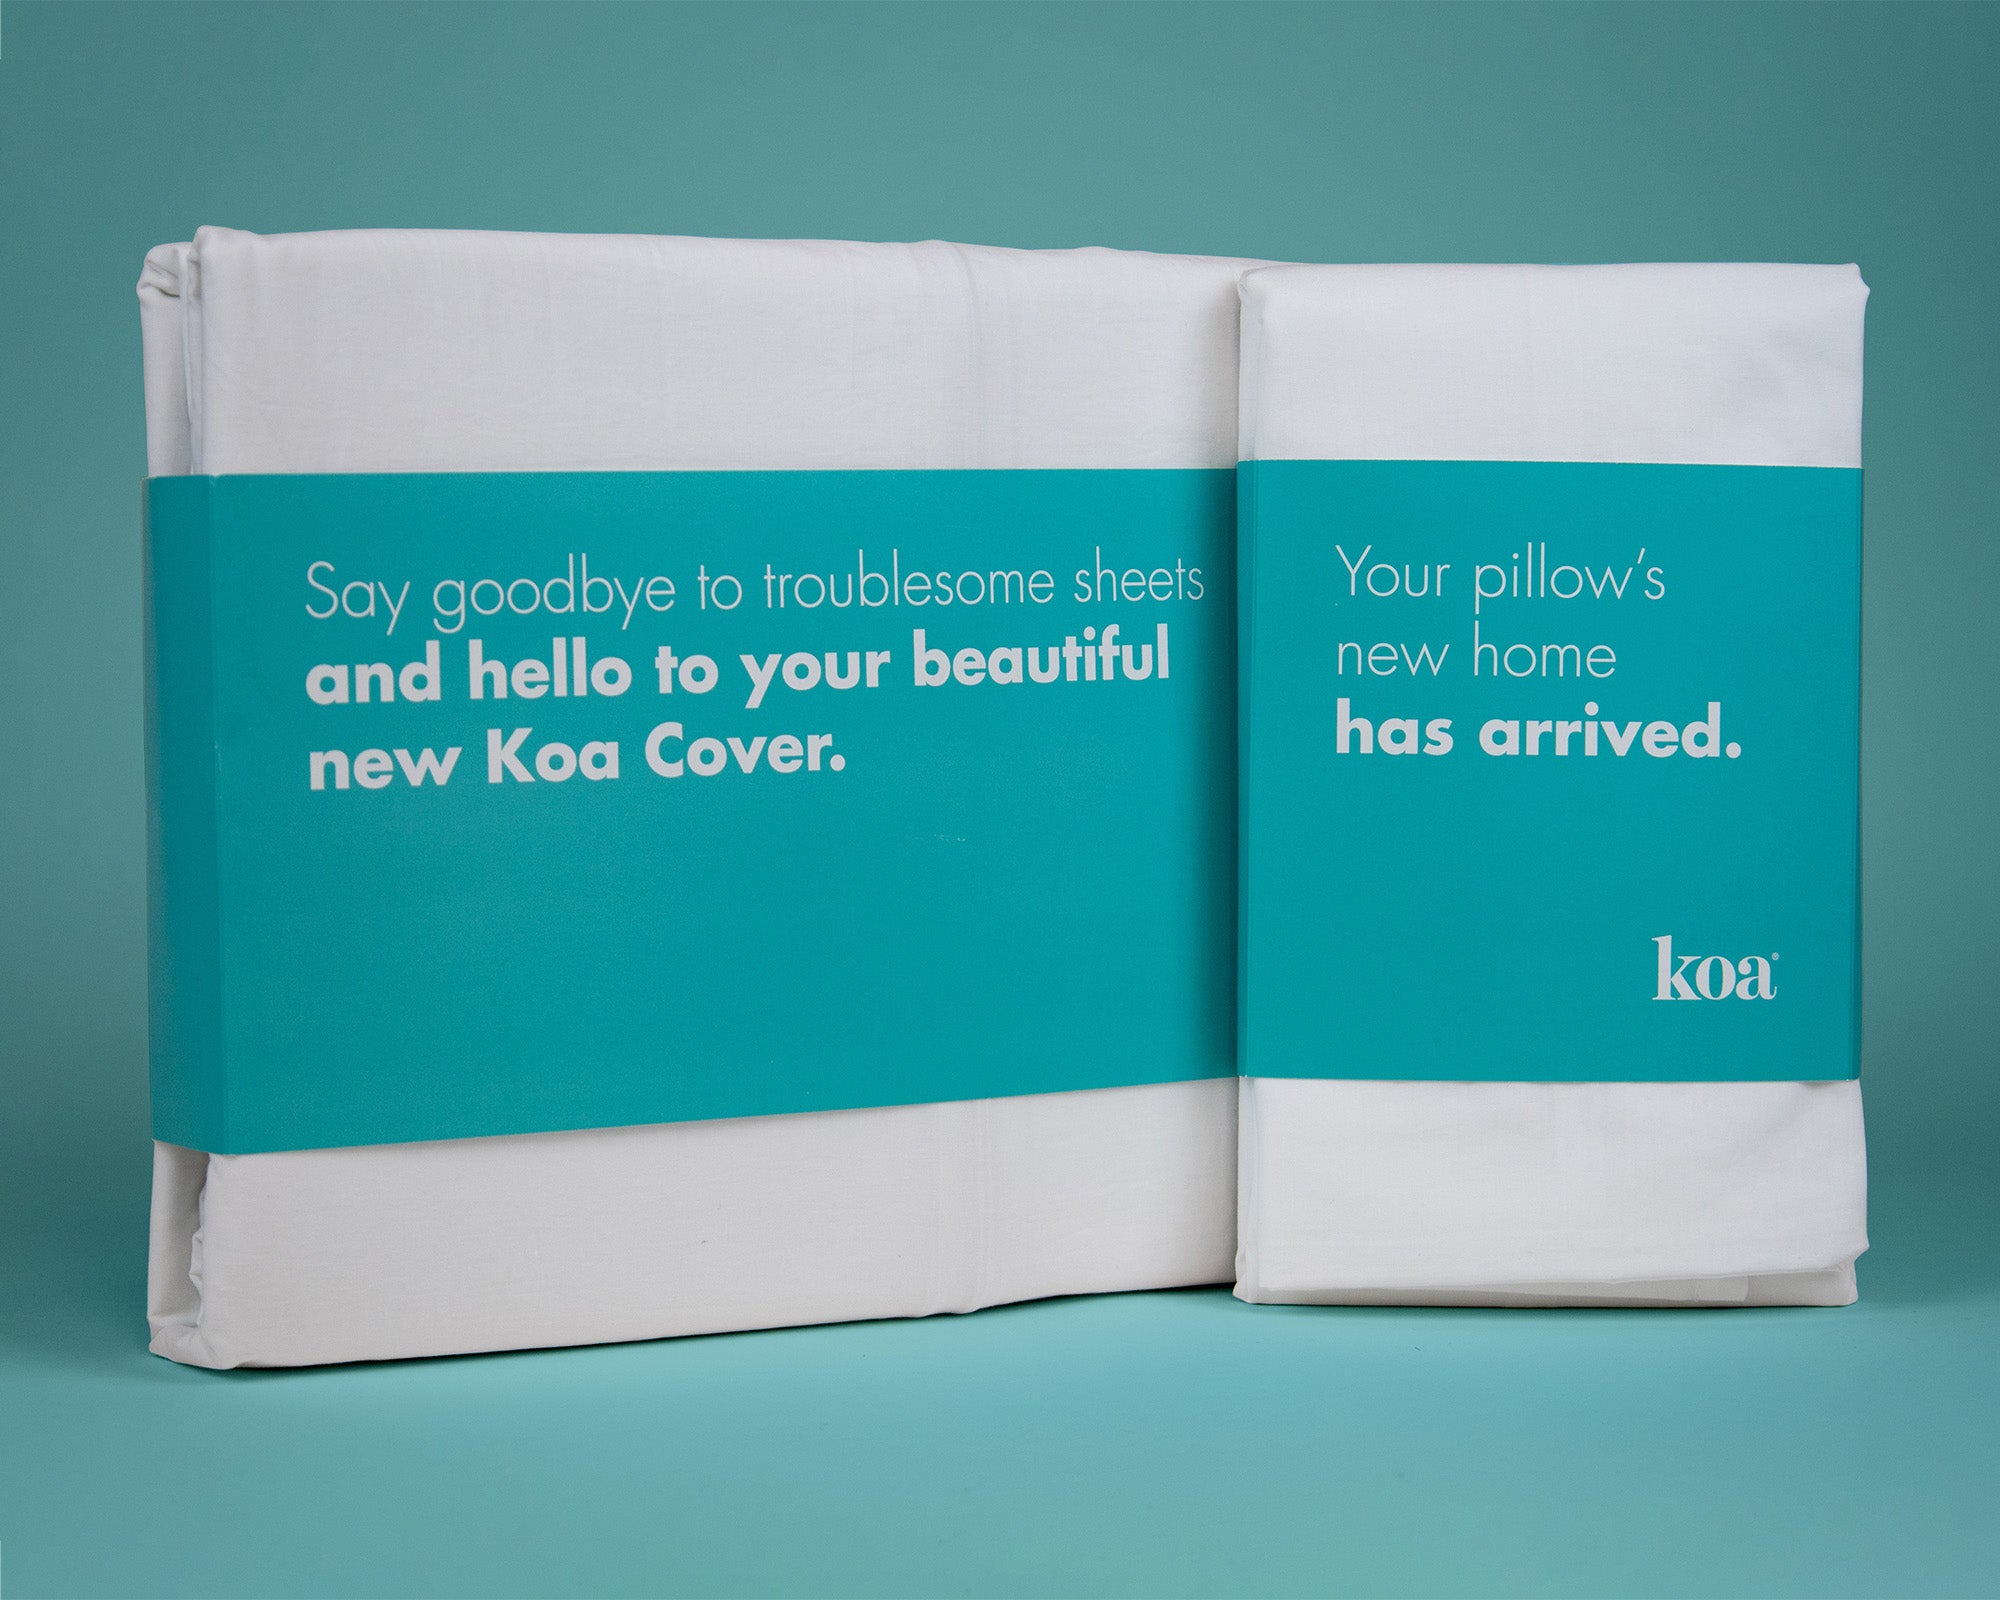 The Koa Cover